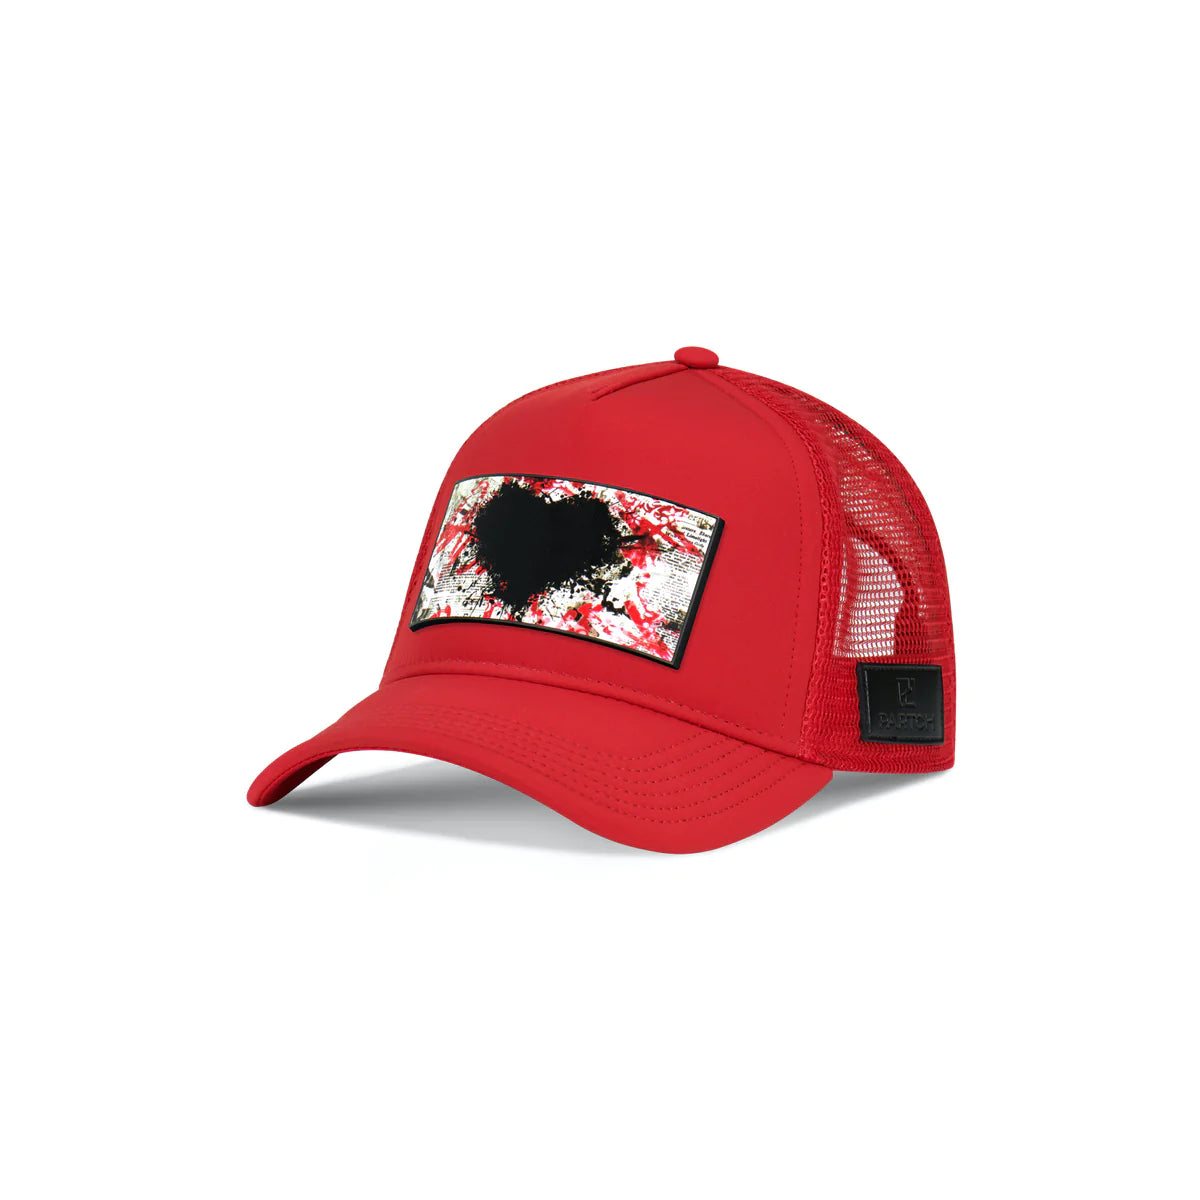 Partch Red Trucker Hat